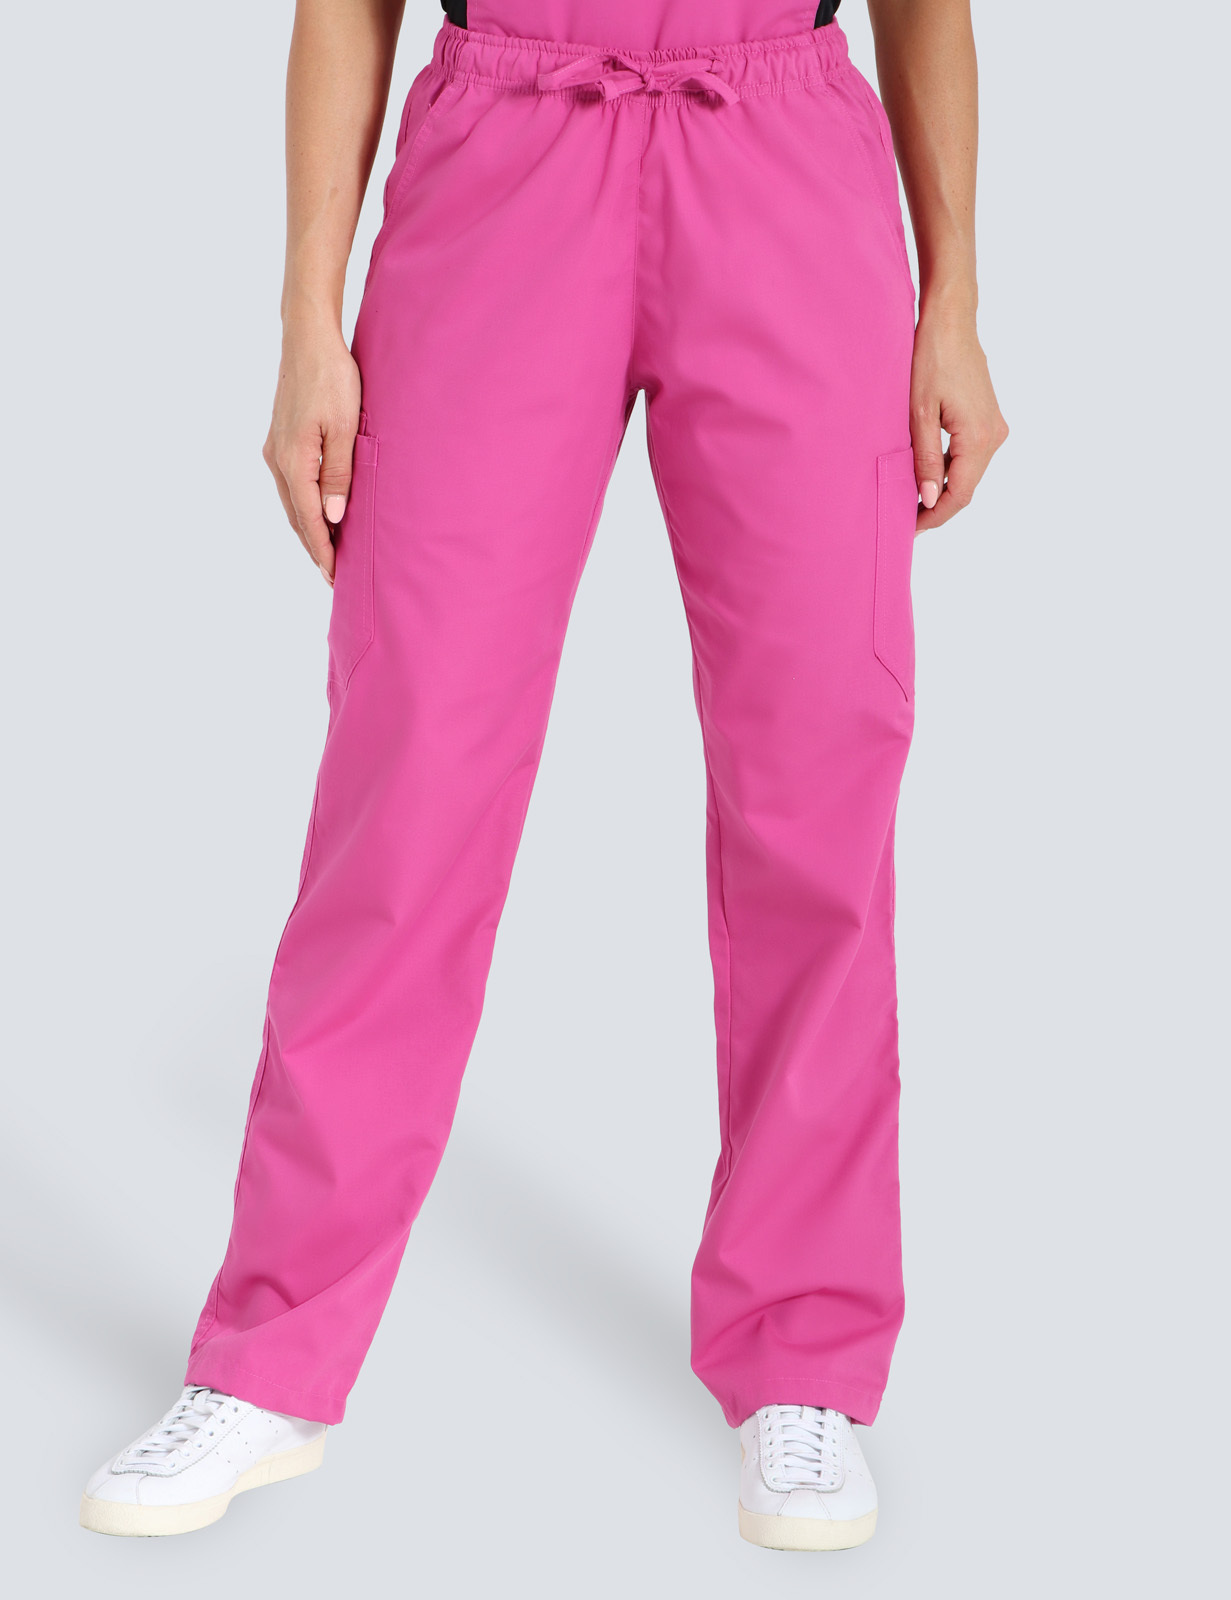 Queensland Children's Hospital Emergency Department Cargo Pants in Pink